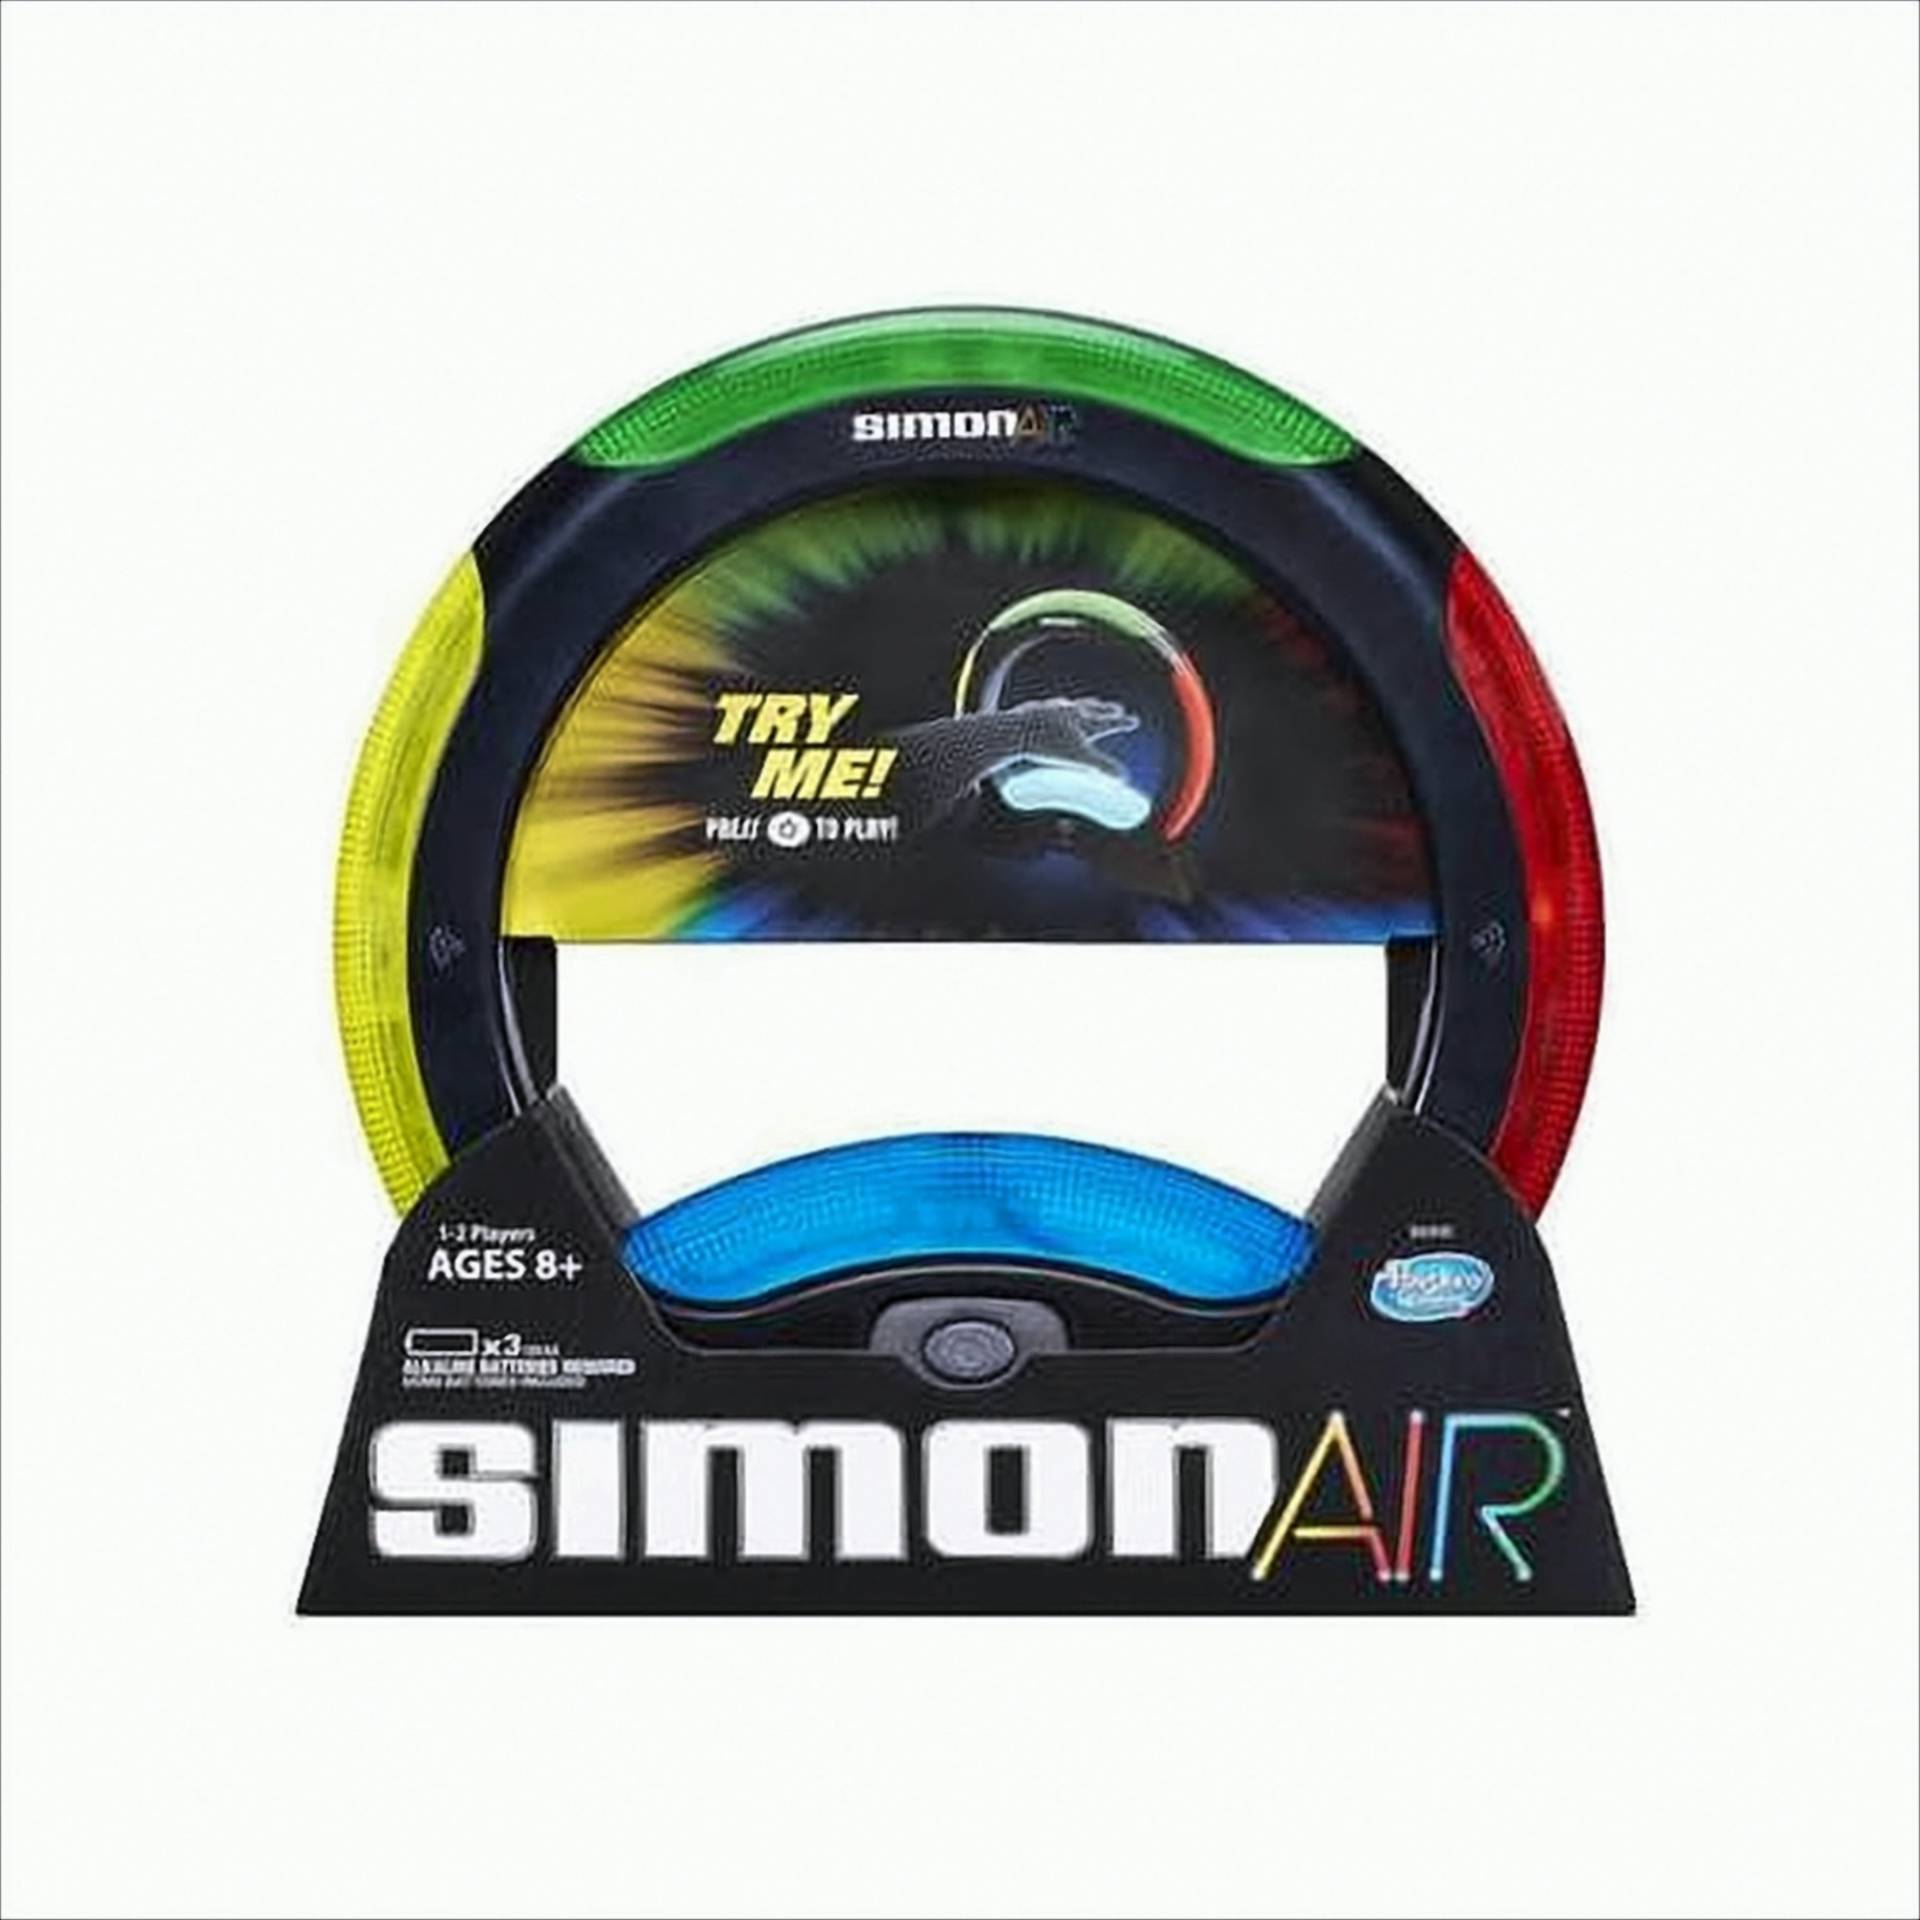 Simon Air von Hasbro Deutschland GmbH